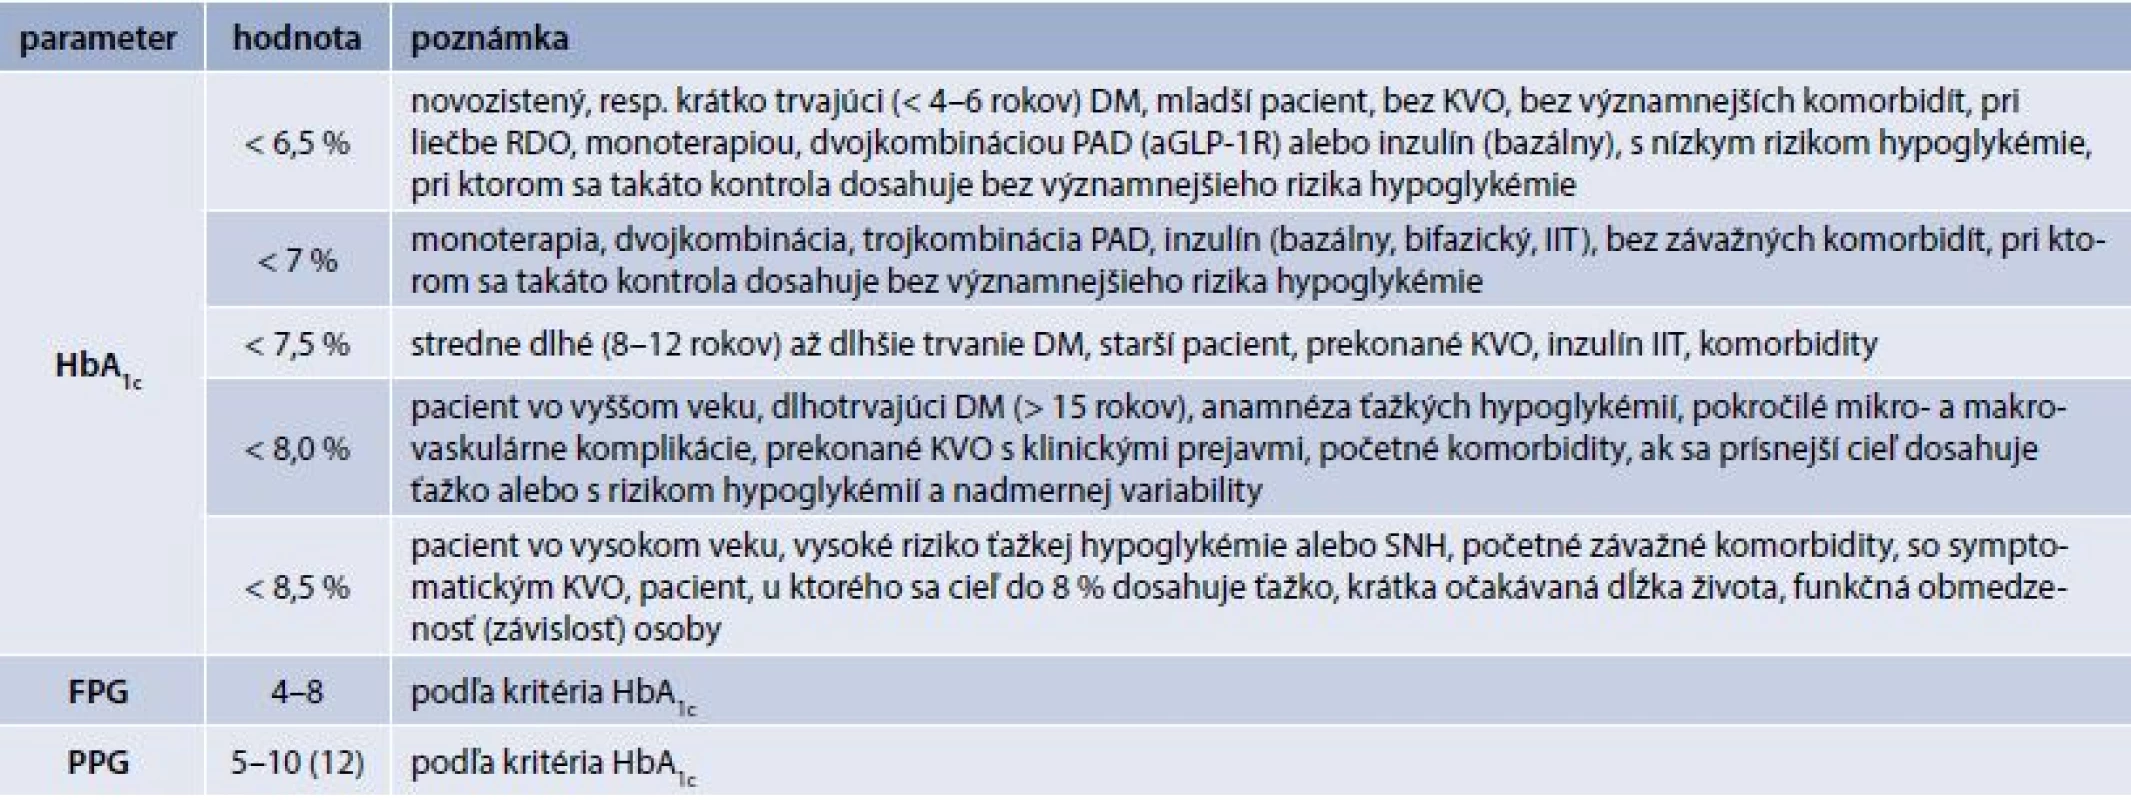 Odporúčania SDS pre cieľové hodnoty parametrov glykemickej kontroly